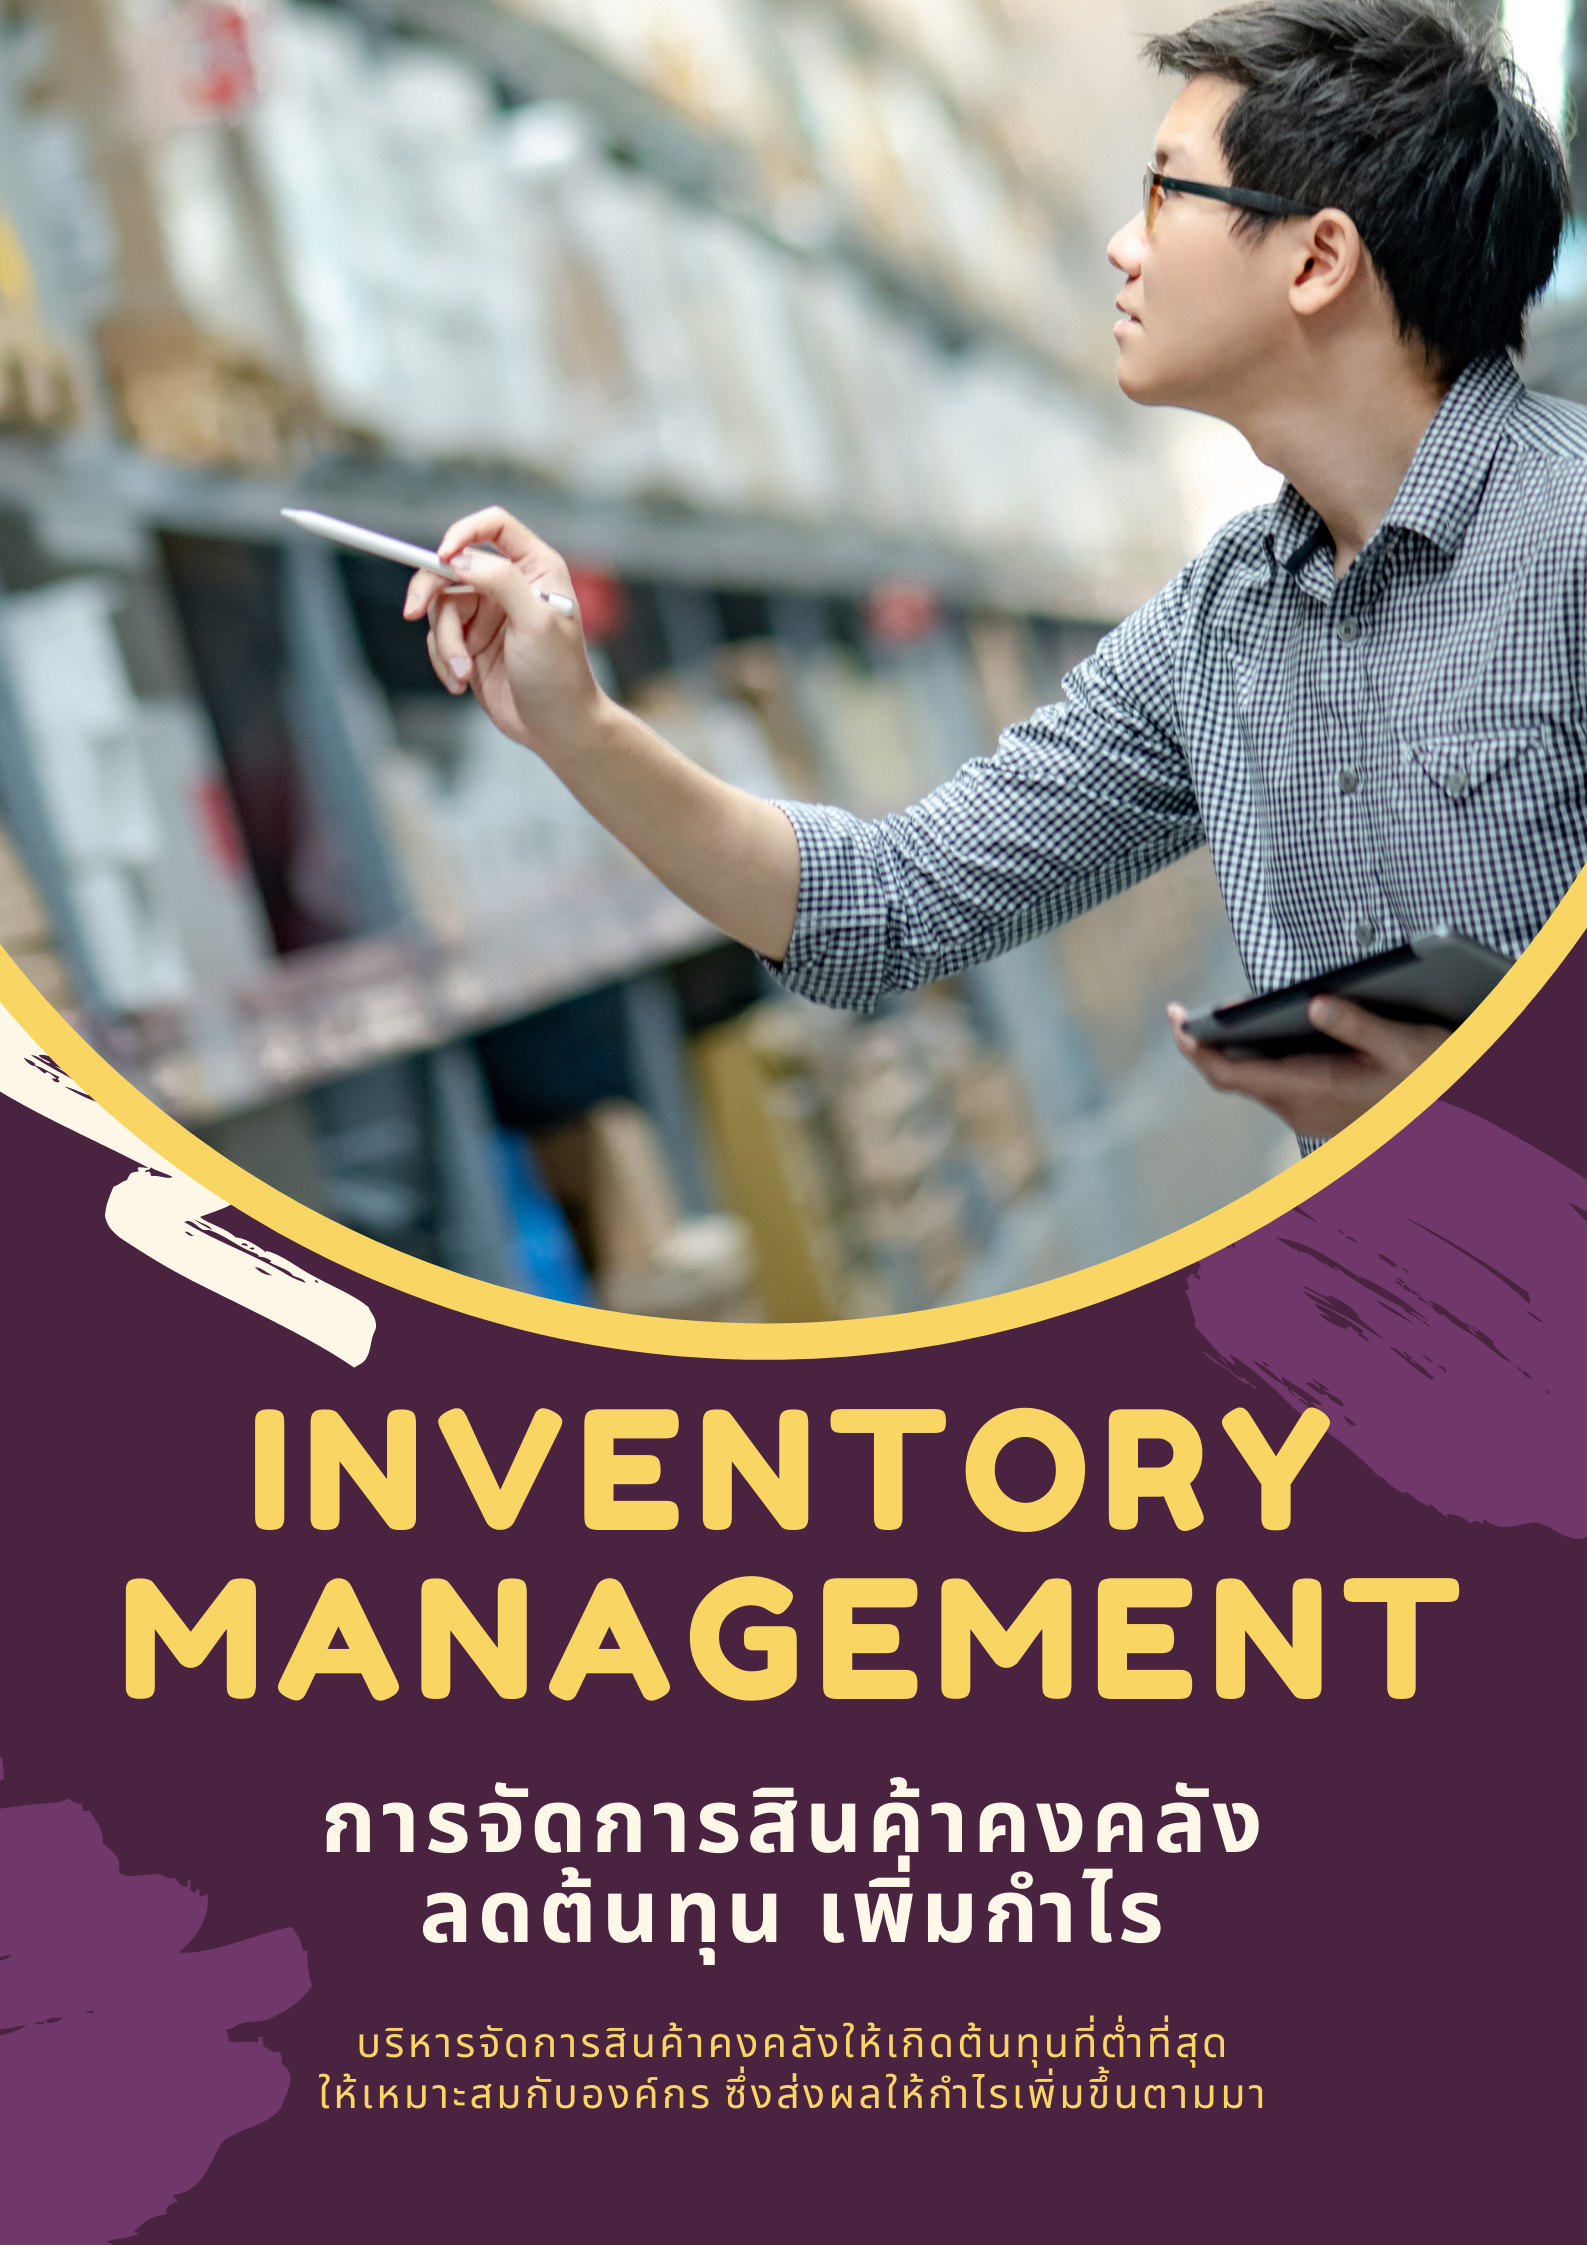 อบรมออนไลน์ : การจัดการสินค้าคงคลัง (Inventory Management) : ต้นทุนลด กำไรเพิ่ม (หลักสูตร 6 ชัวโมง)